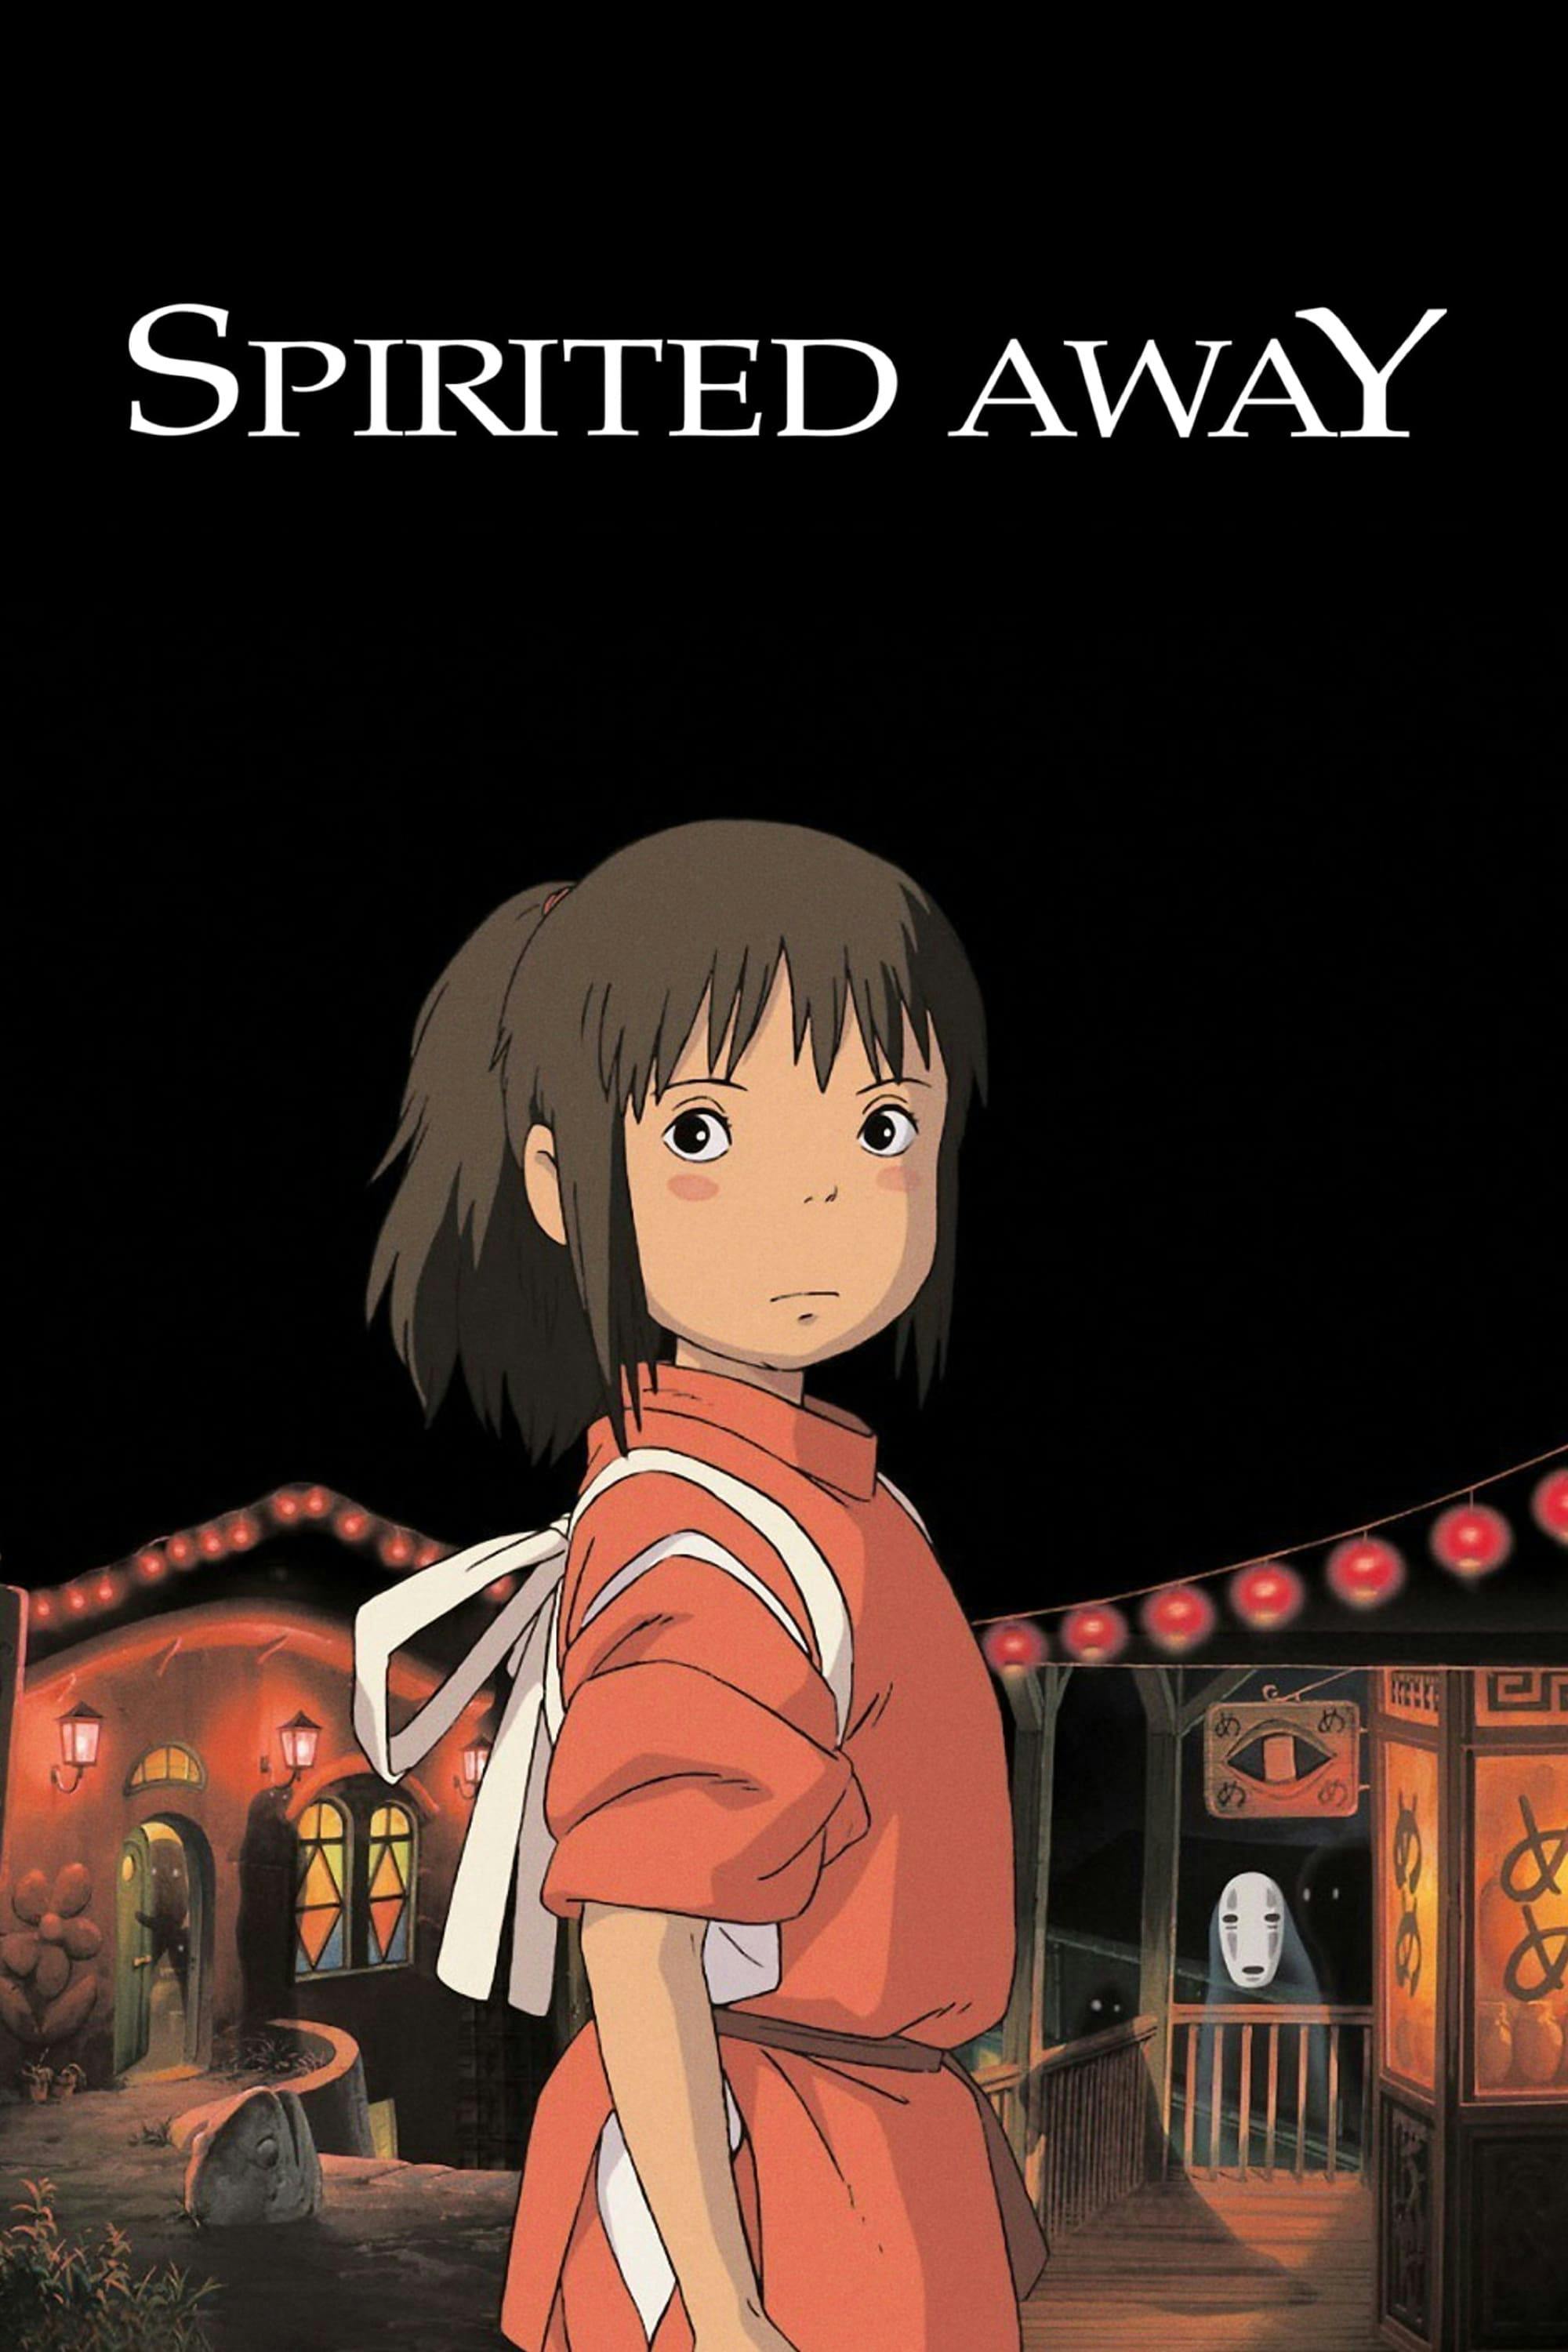 Best Hayao Miyazaki movies to watch on Amazon or iTunes